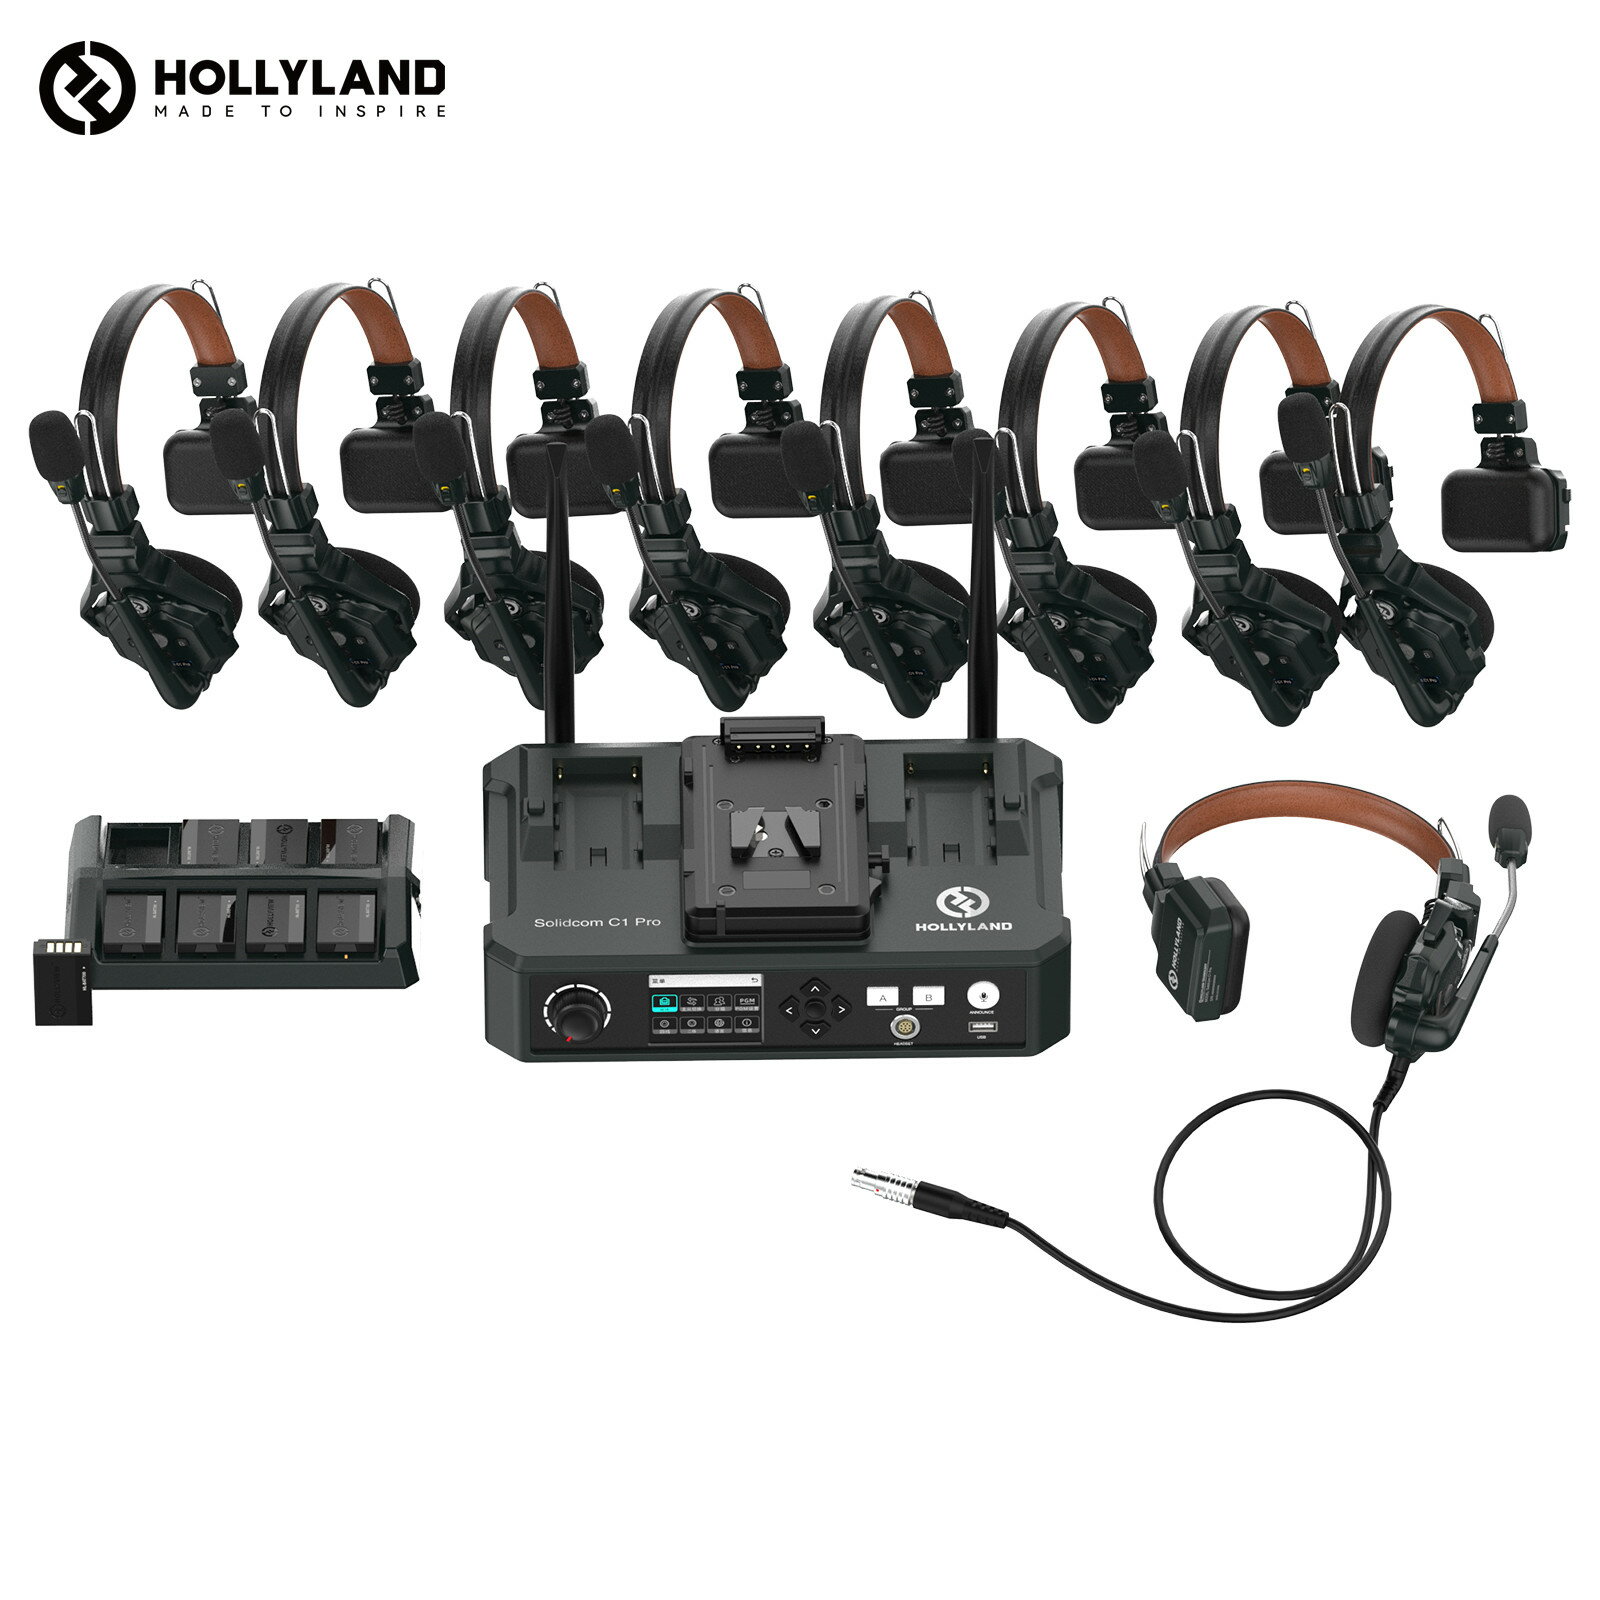 【特典付き】Hollyland Solidcom C1 Pro-HUB8S ワイヤレスインカム 9台セット ノイズキャンセリング・PTT・ミュート機能付き 全二重 通話範囲350m 親機x1子機x8 子機増設可能 小型軽量ヘッドセット 設定不要 箱から出してすぐに使える同時通話インカム